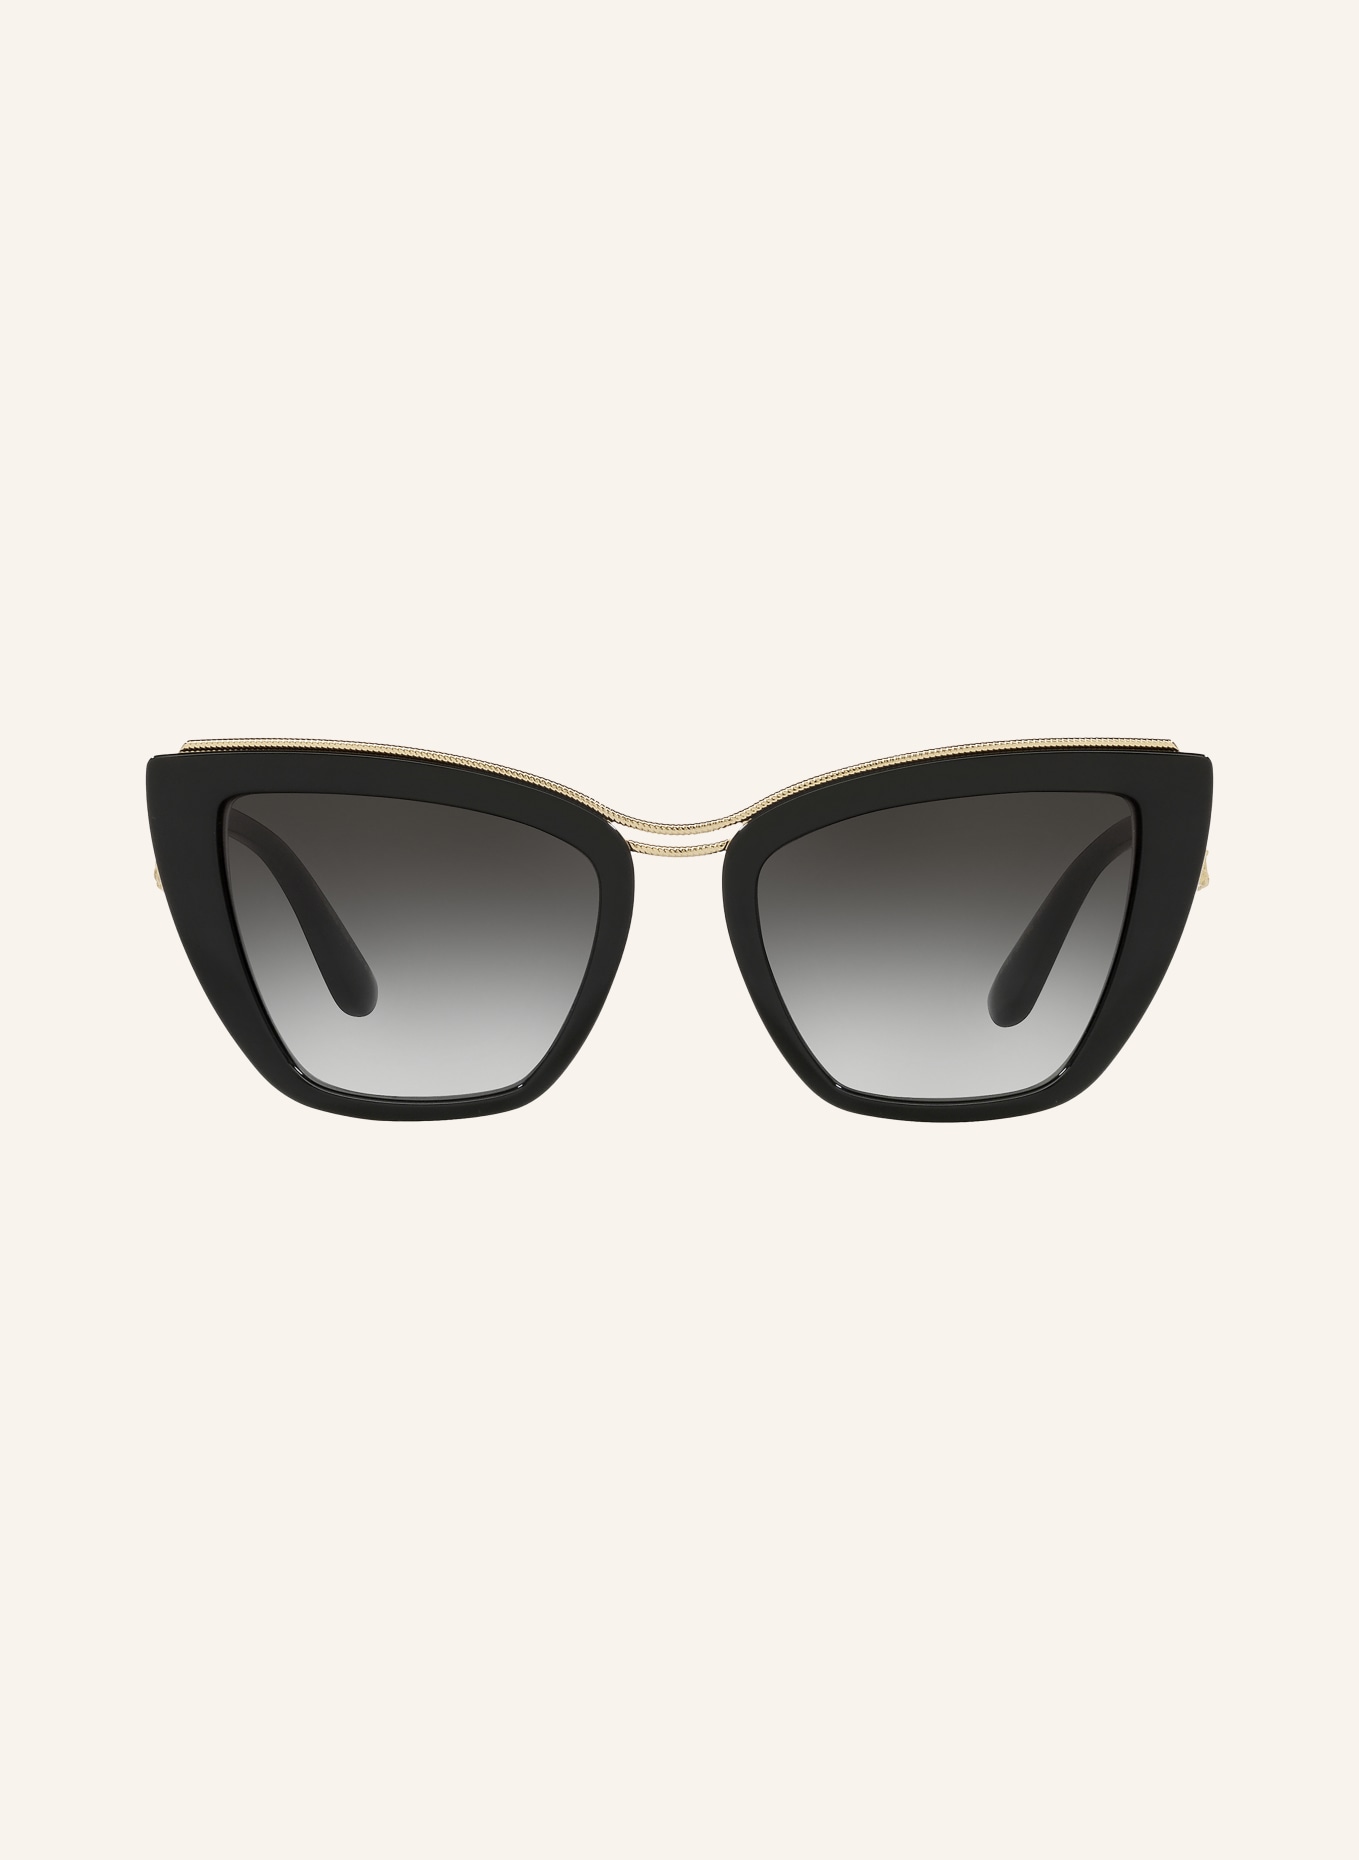 DOLCE & GABBANA Sunglasses DG6144, Color: 501/8G - BLACK/BLACK GRADIENT (Image 2)